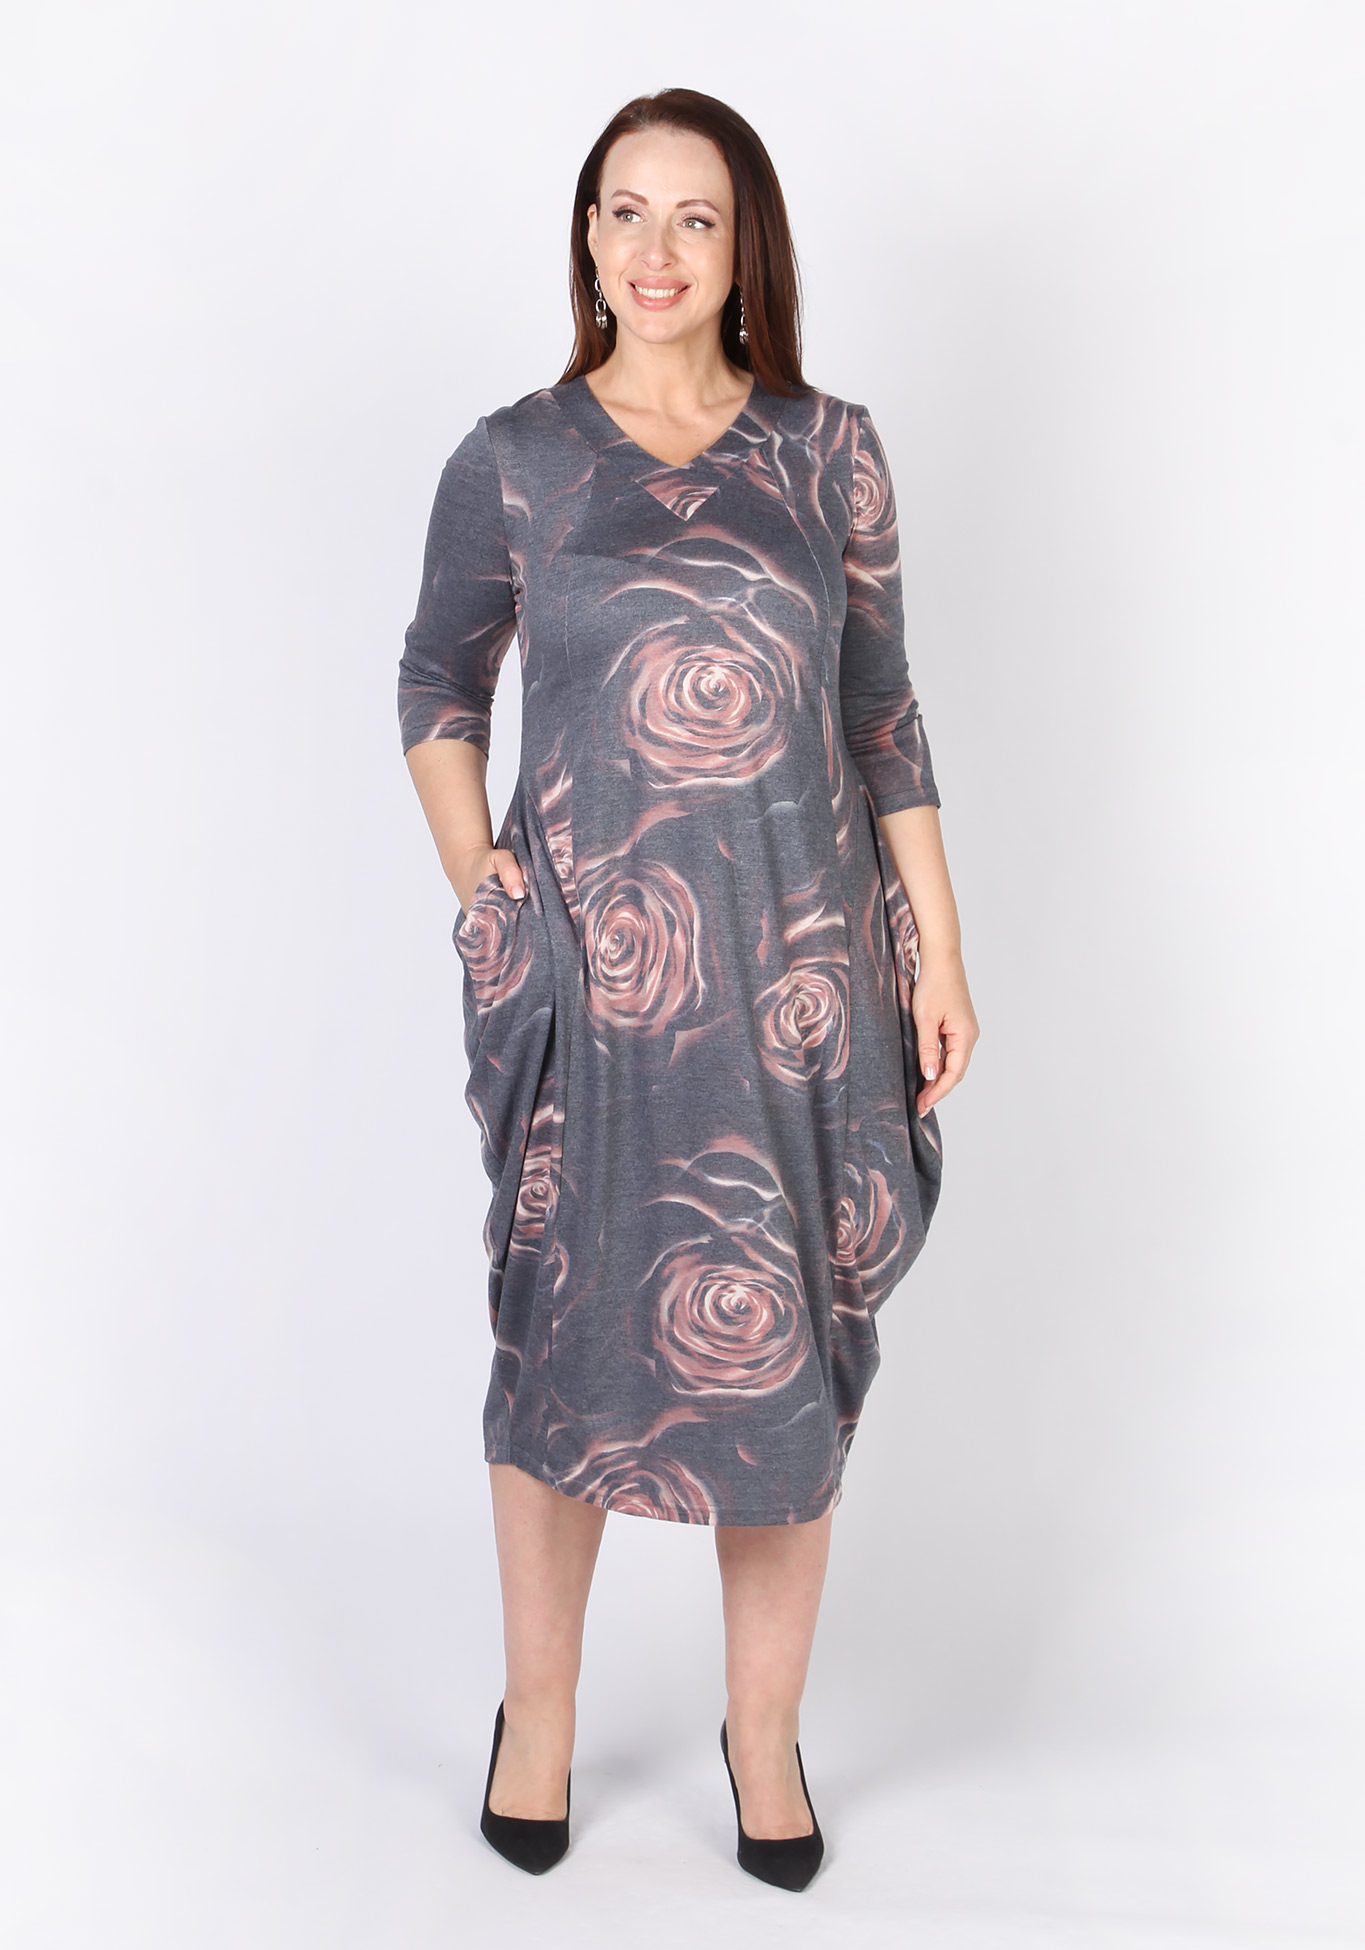 Платье "Элегантное барокко" Veas, размер 48, цвет серо-бежевый - фото 2